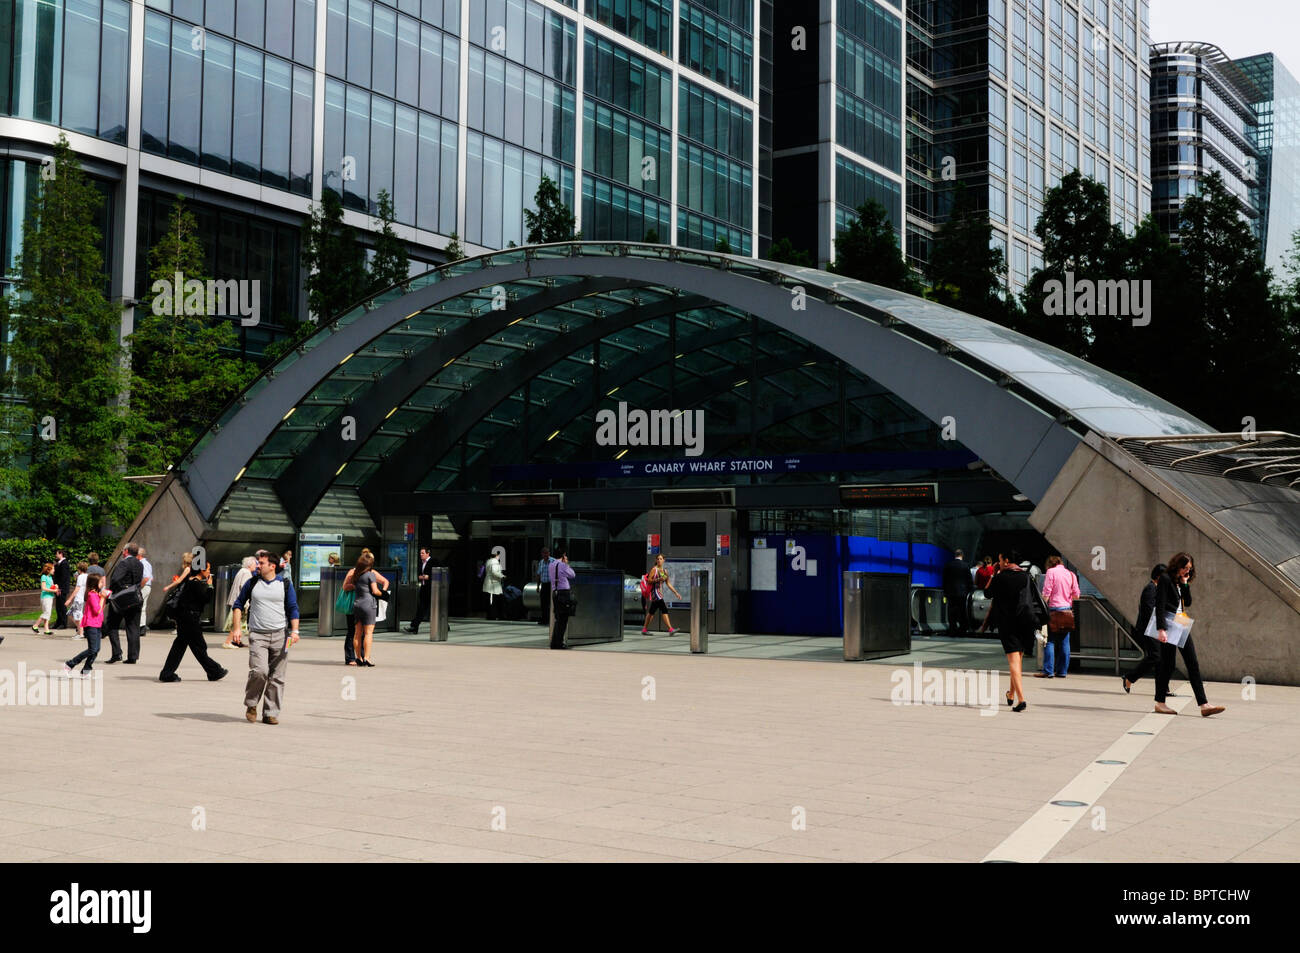 Entrée de la station de métro Canary Wharf, London, England, UK Banque D'Images